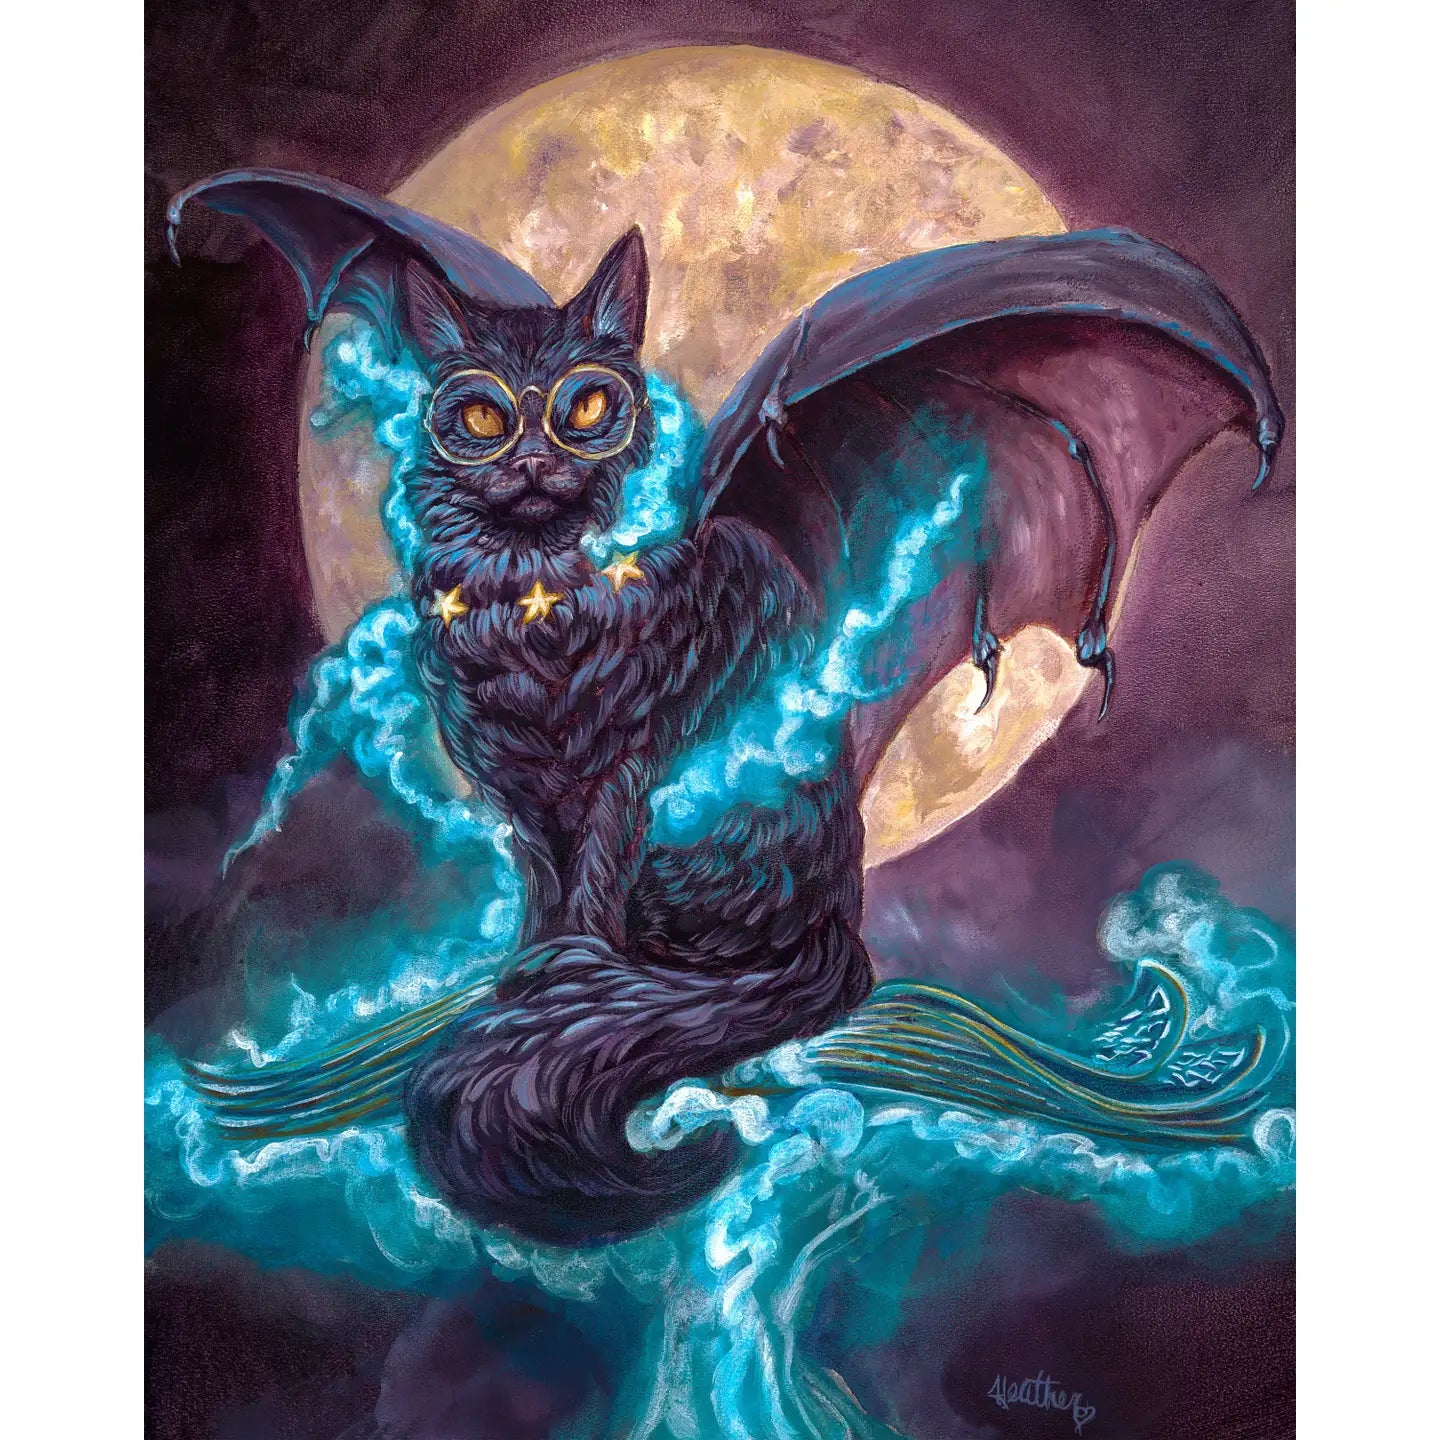 Transfiguration Spell Cat Fantasy Art Print